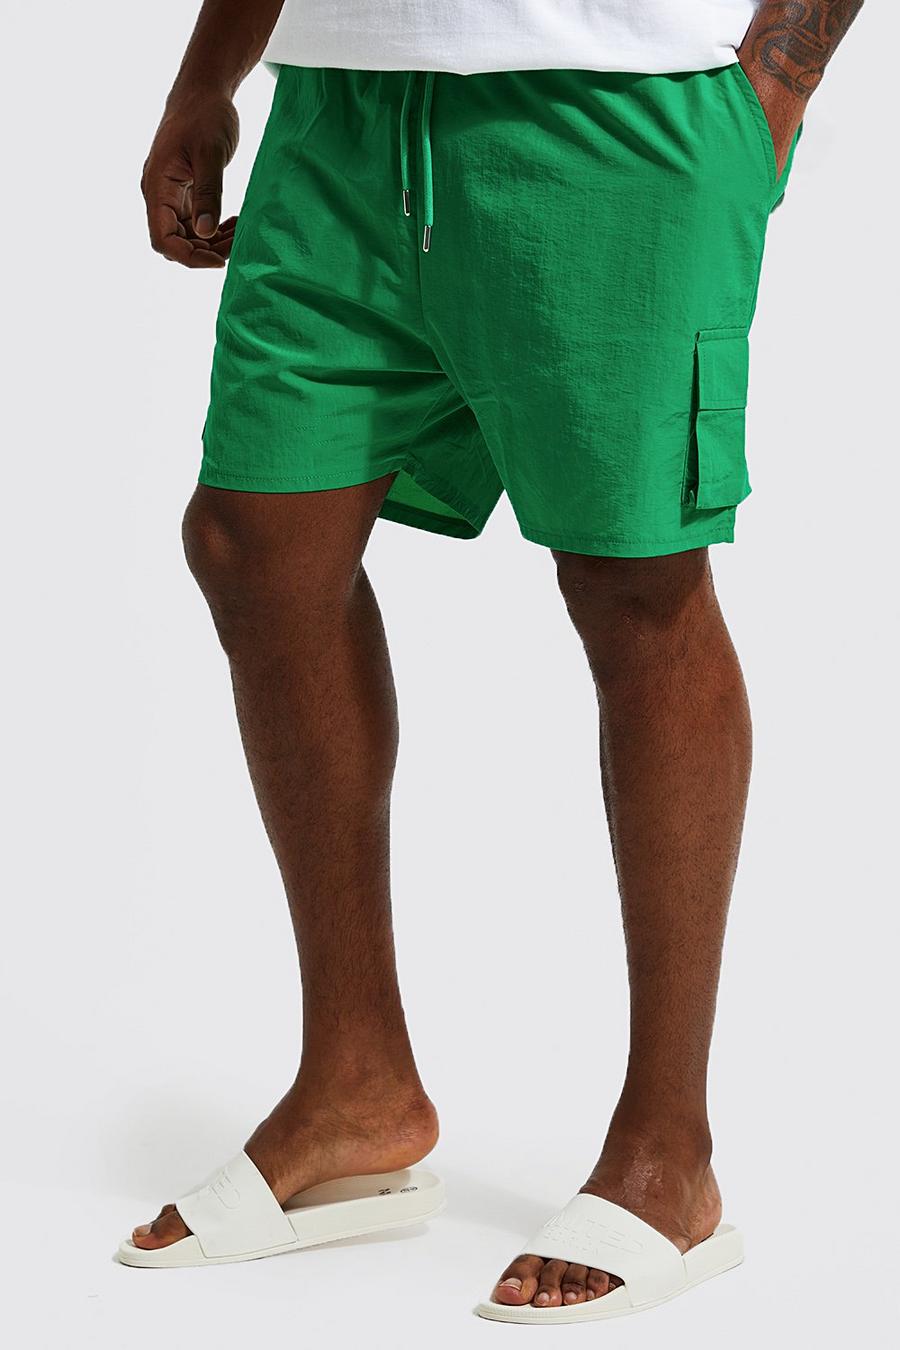 ירוק gerde שורט בגד ים בסגנון דגמ'ח עם בד מעטפת פנימי וקמטים, מידות גדולות